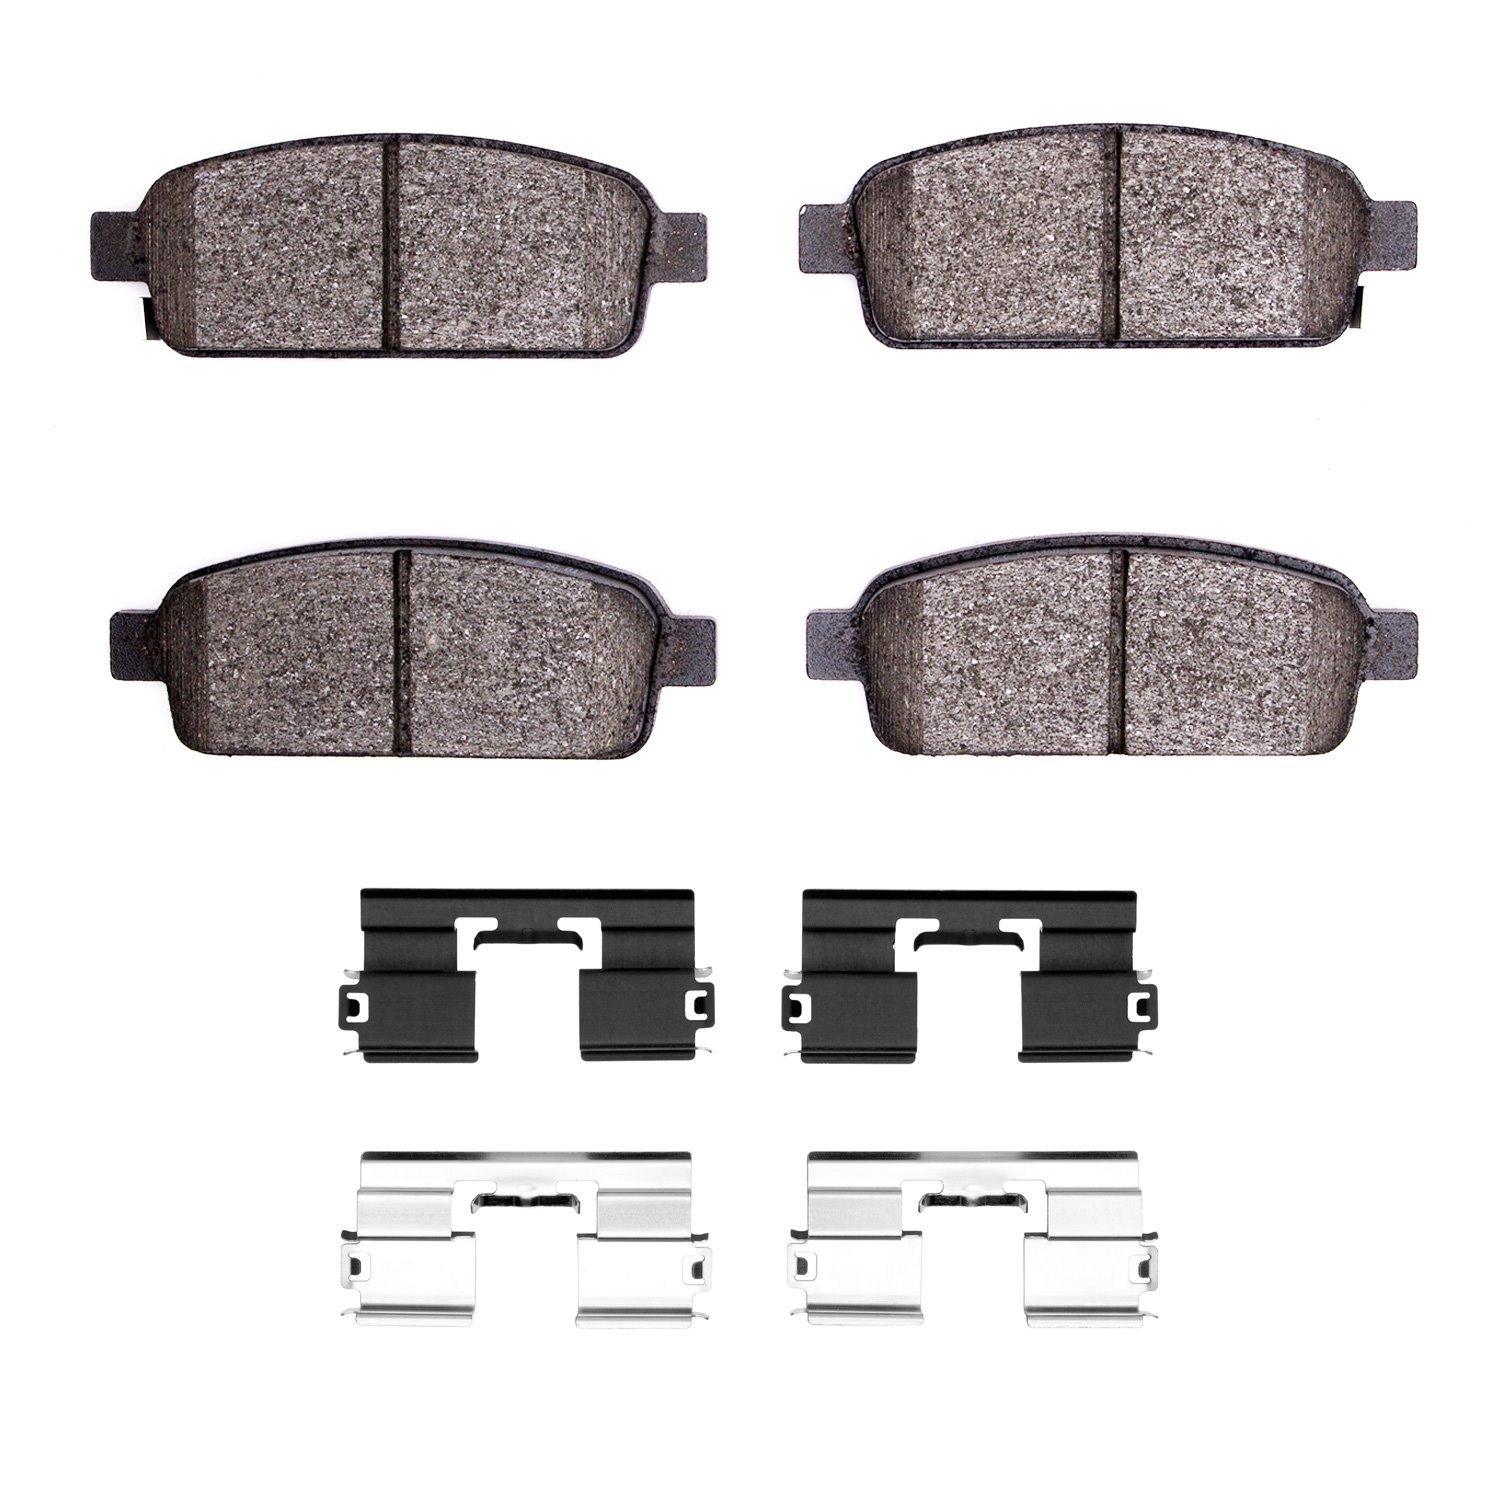 1310-1468-01 3000-Series Ceramic Brake Pads & Hardware Kit, 2011-2019 GM, Position: Rear